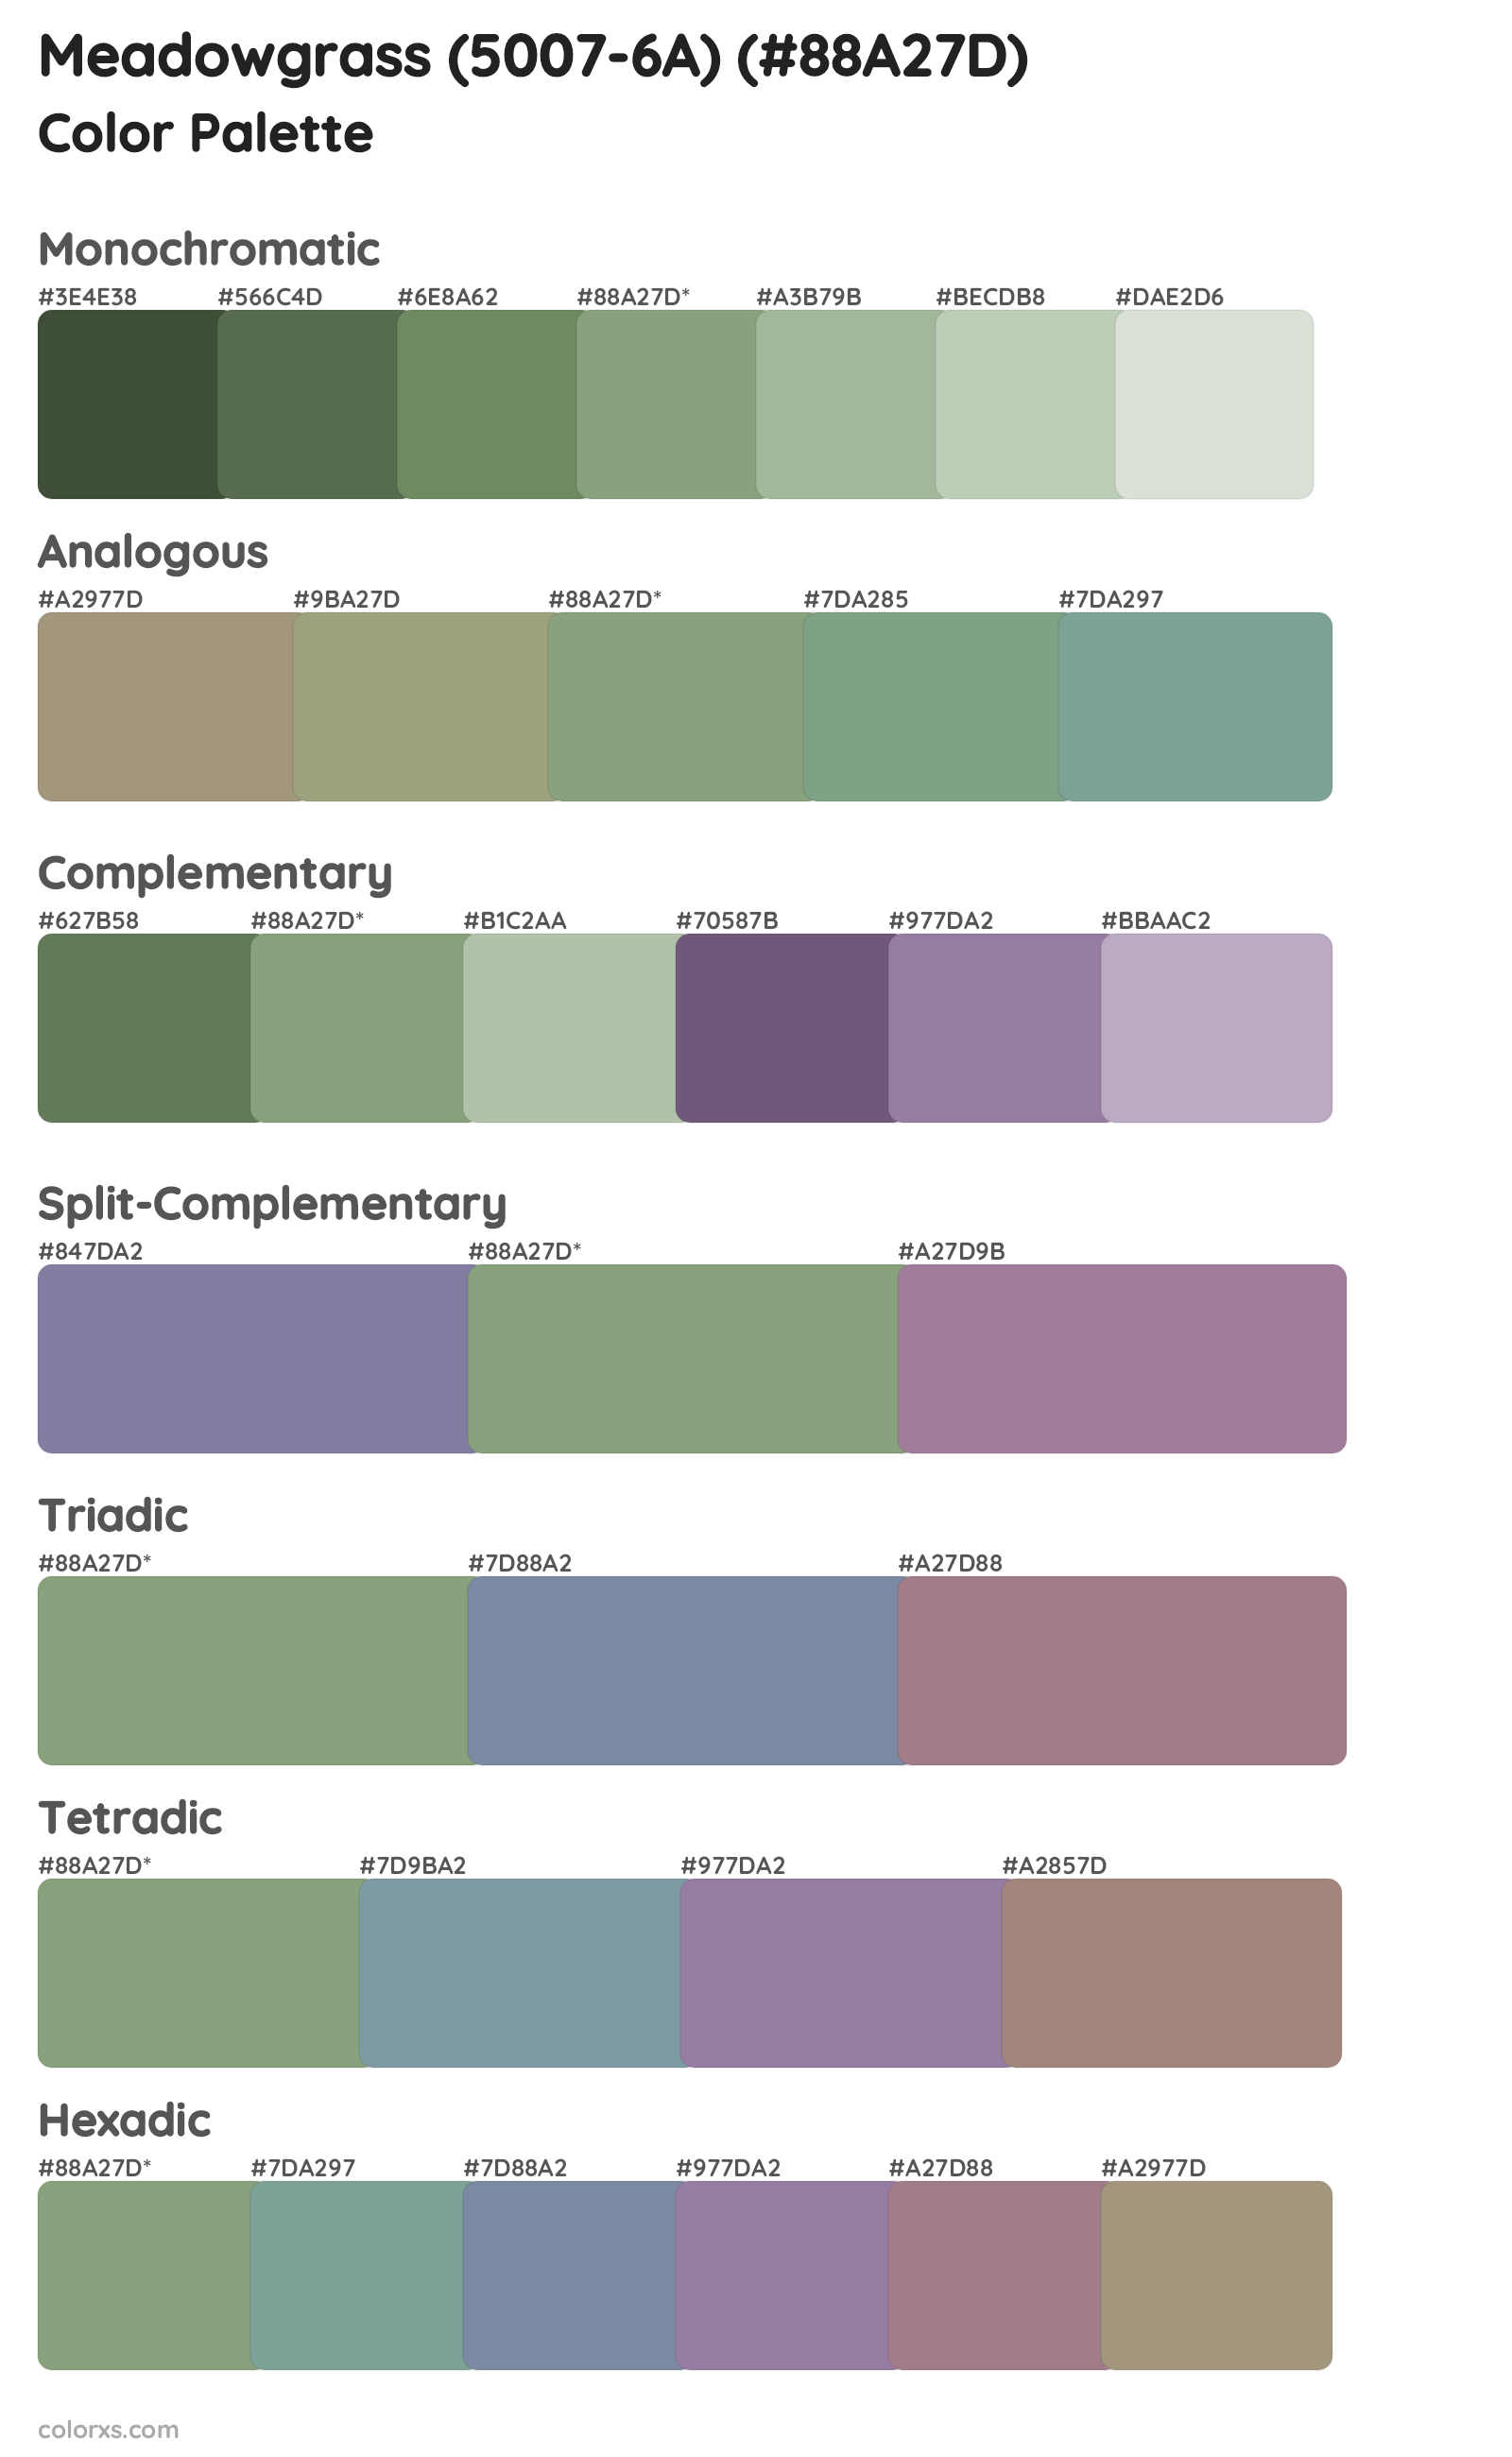 Meadowgrass (5007-6A) Color Scheme Palettes